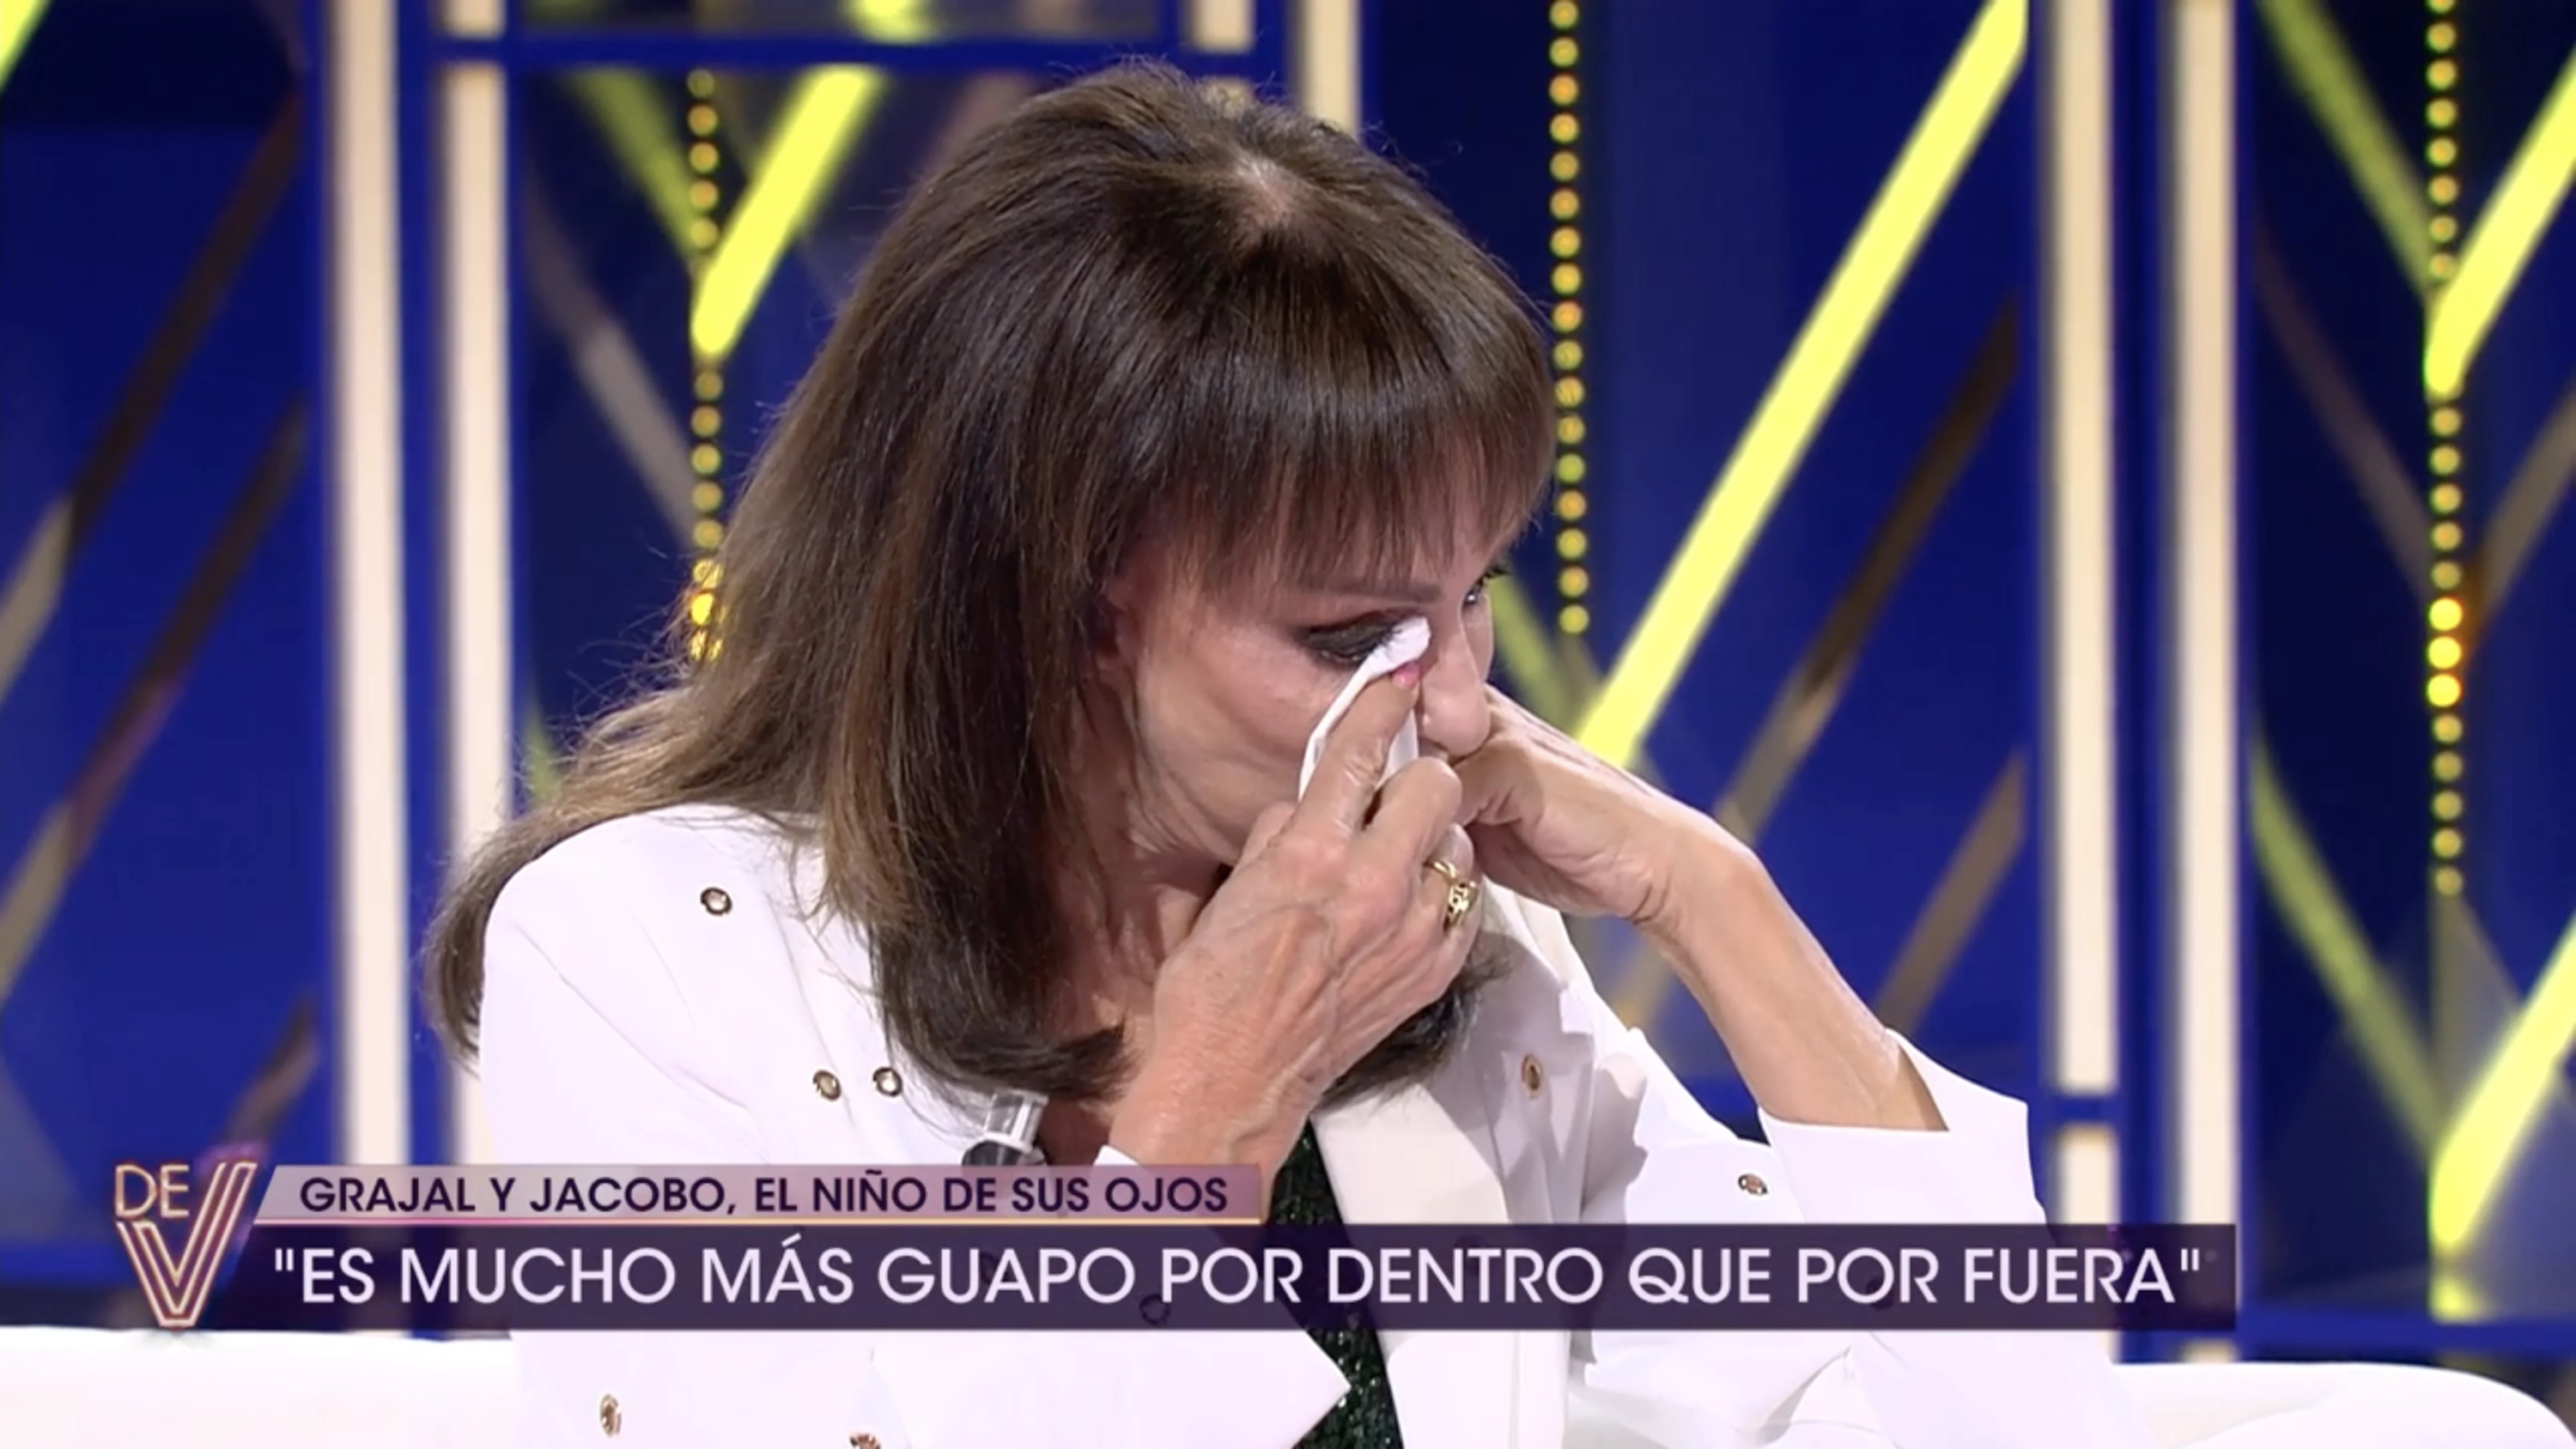 María Ángeles Grajal y su hijo Jacobo Ostos se emocionan al recordar a Jaime Ostos